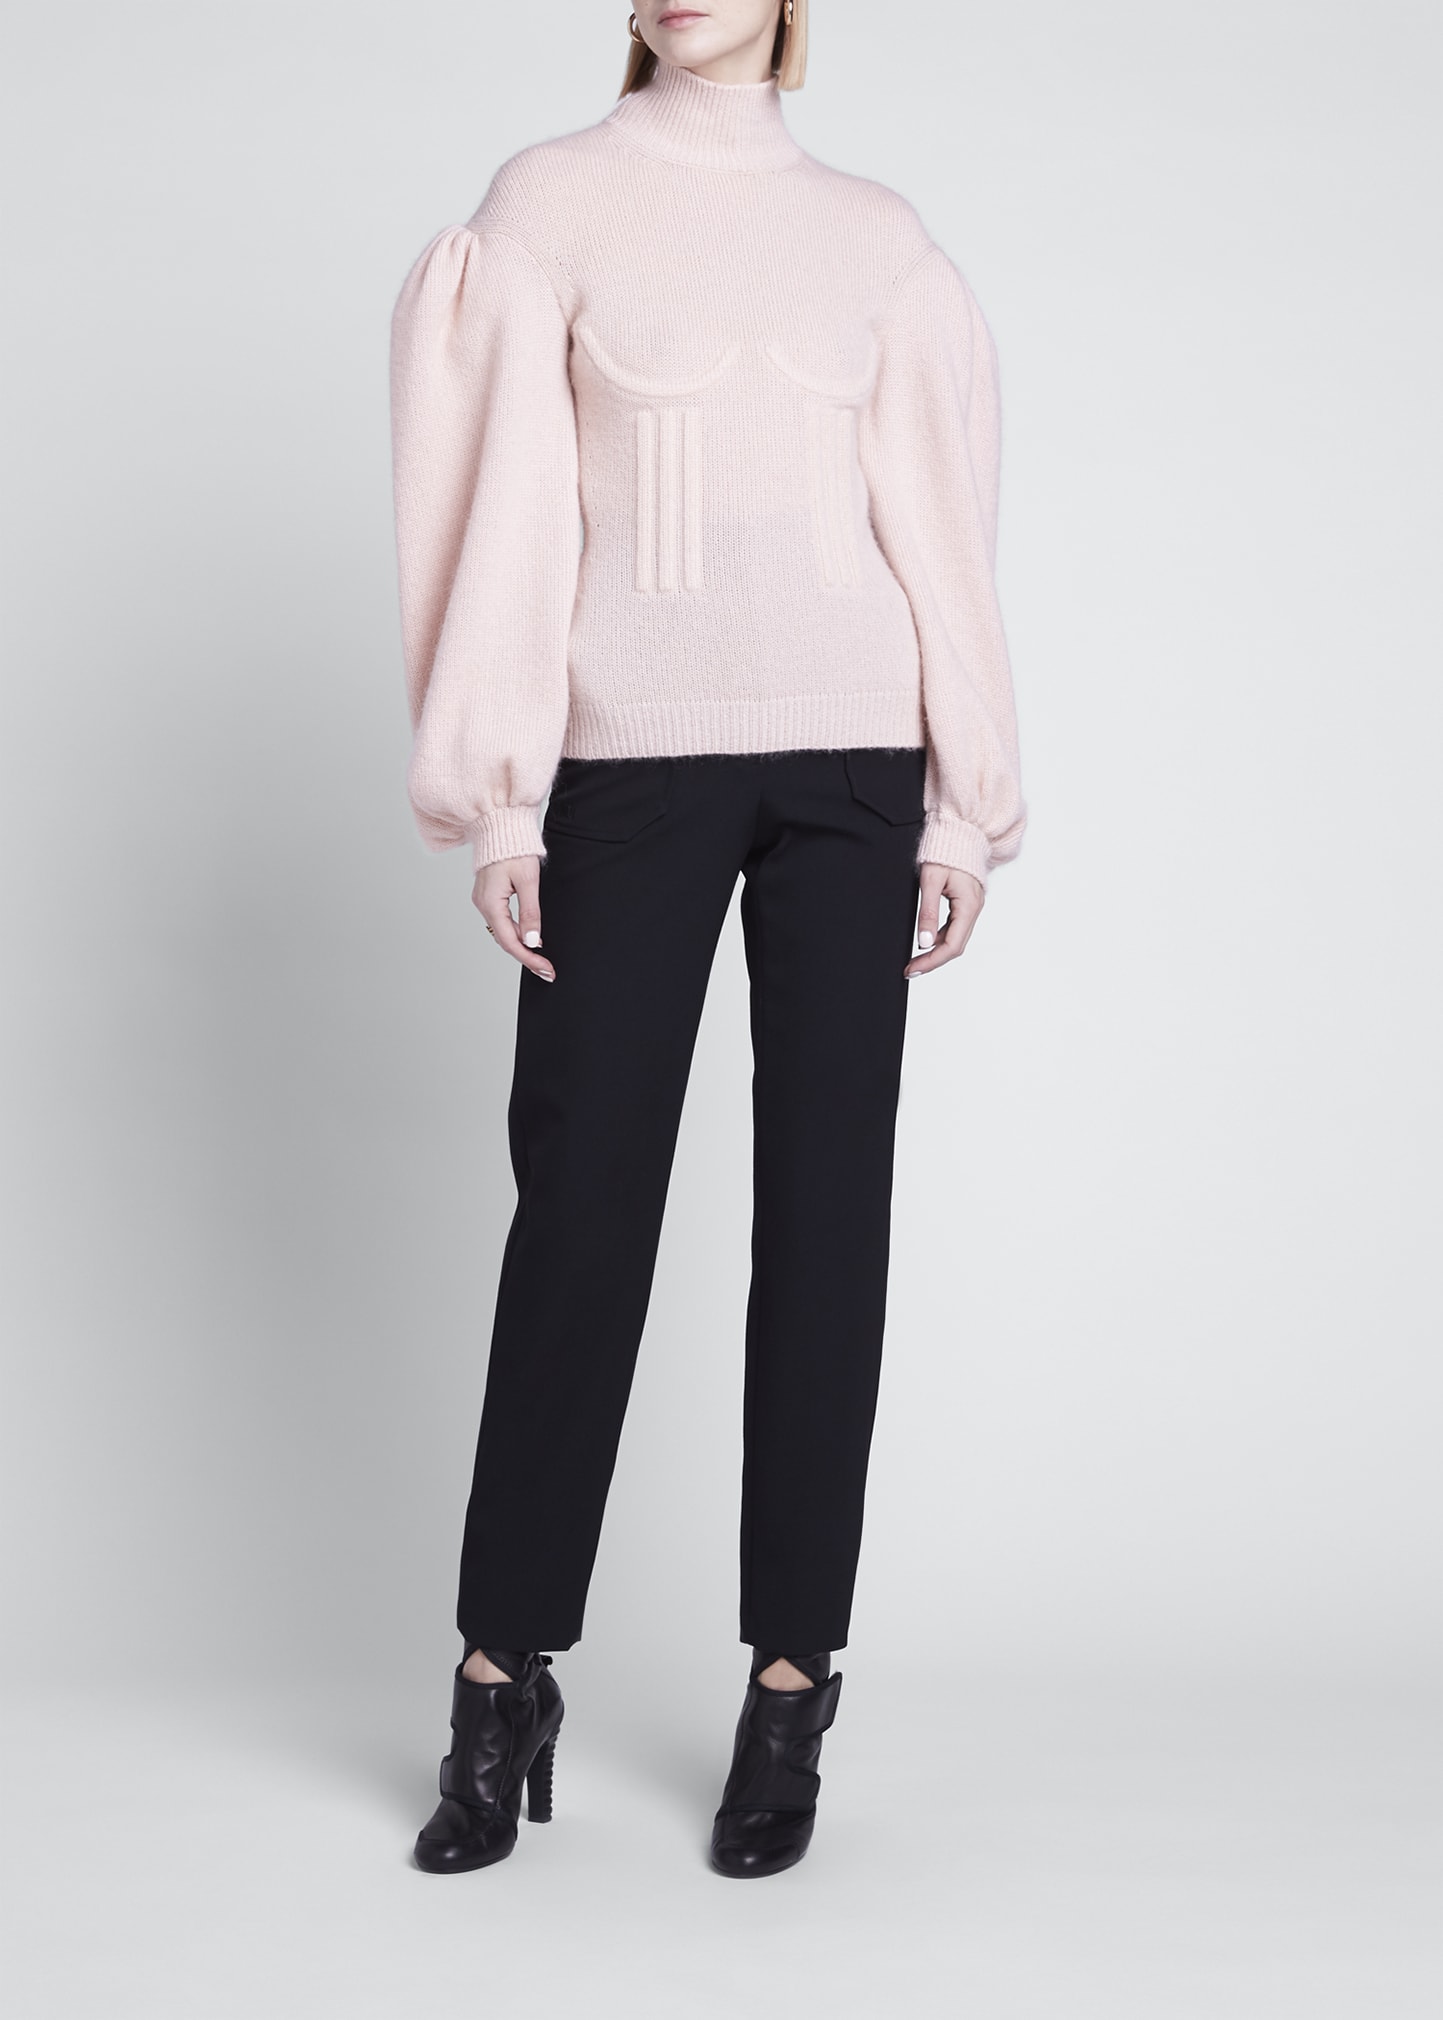 Fendi Boned Cashmere-Blend Sweater